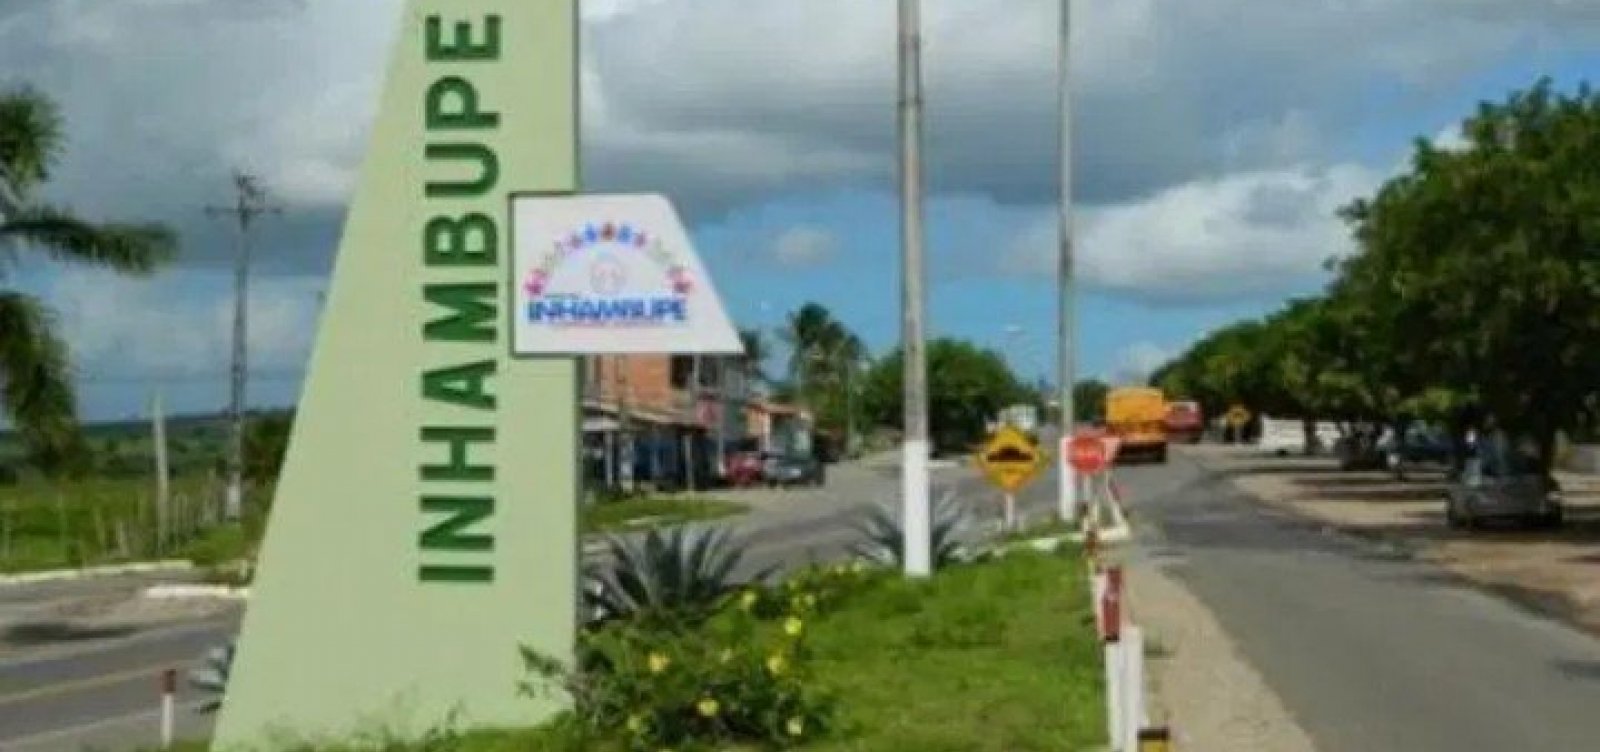 Secretária de saúde de Inhambupe é afastada por improbidade administrativa